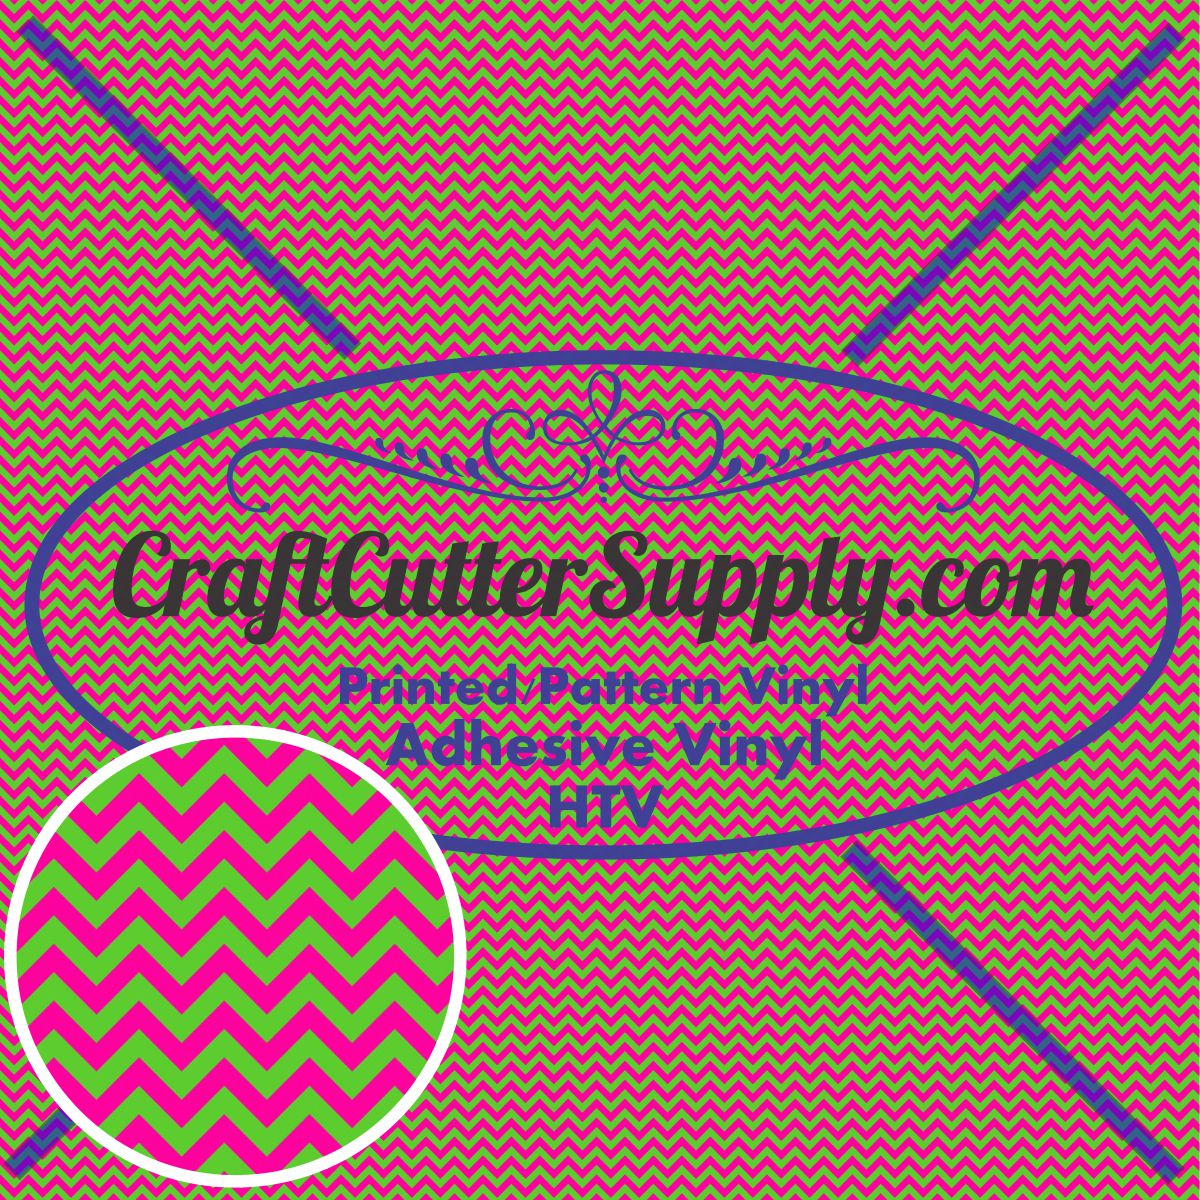 Pattern 34 12x12 - CraftCutterSupply.com